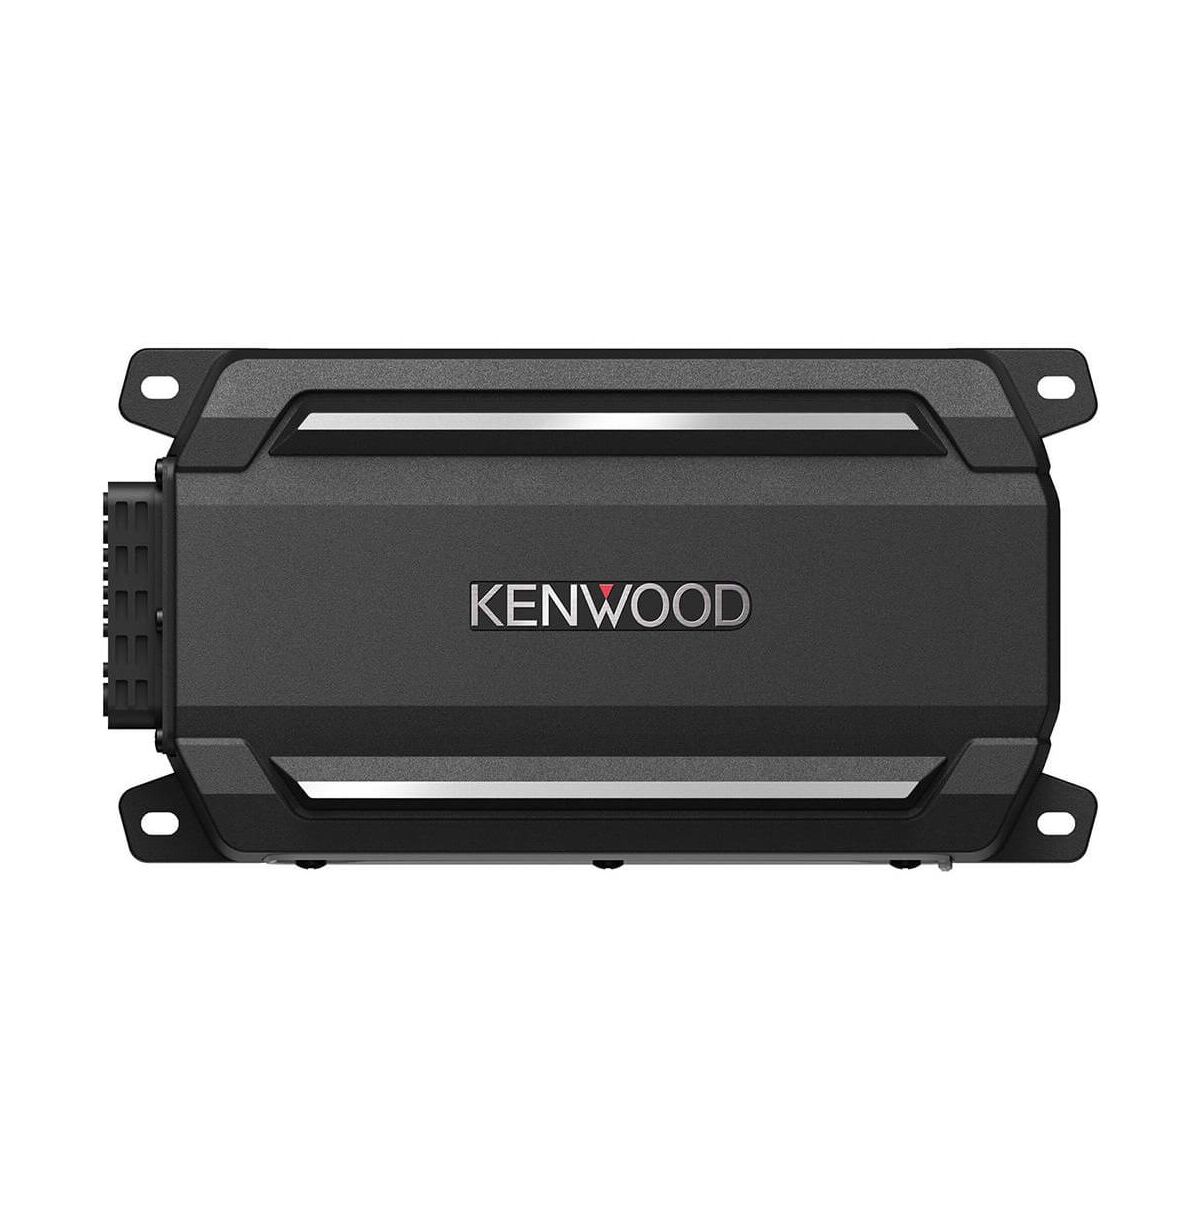 Kenwood 6)4-ch Digital Amplifier 50W - Black